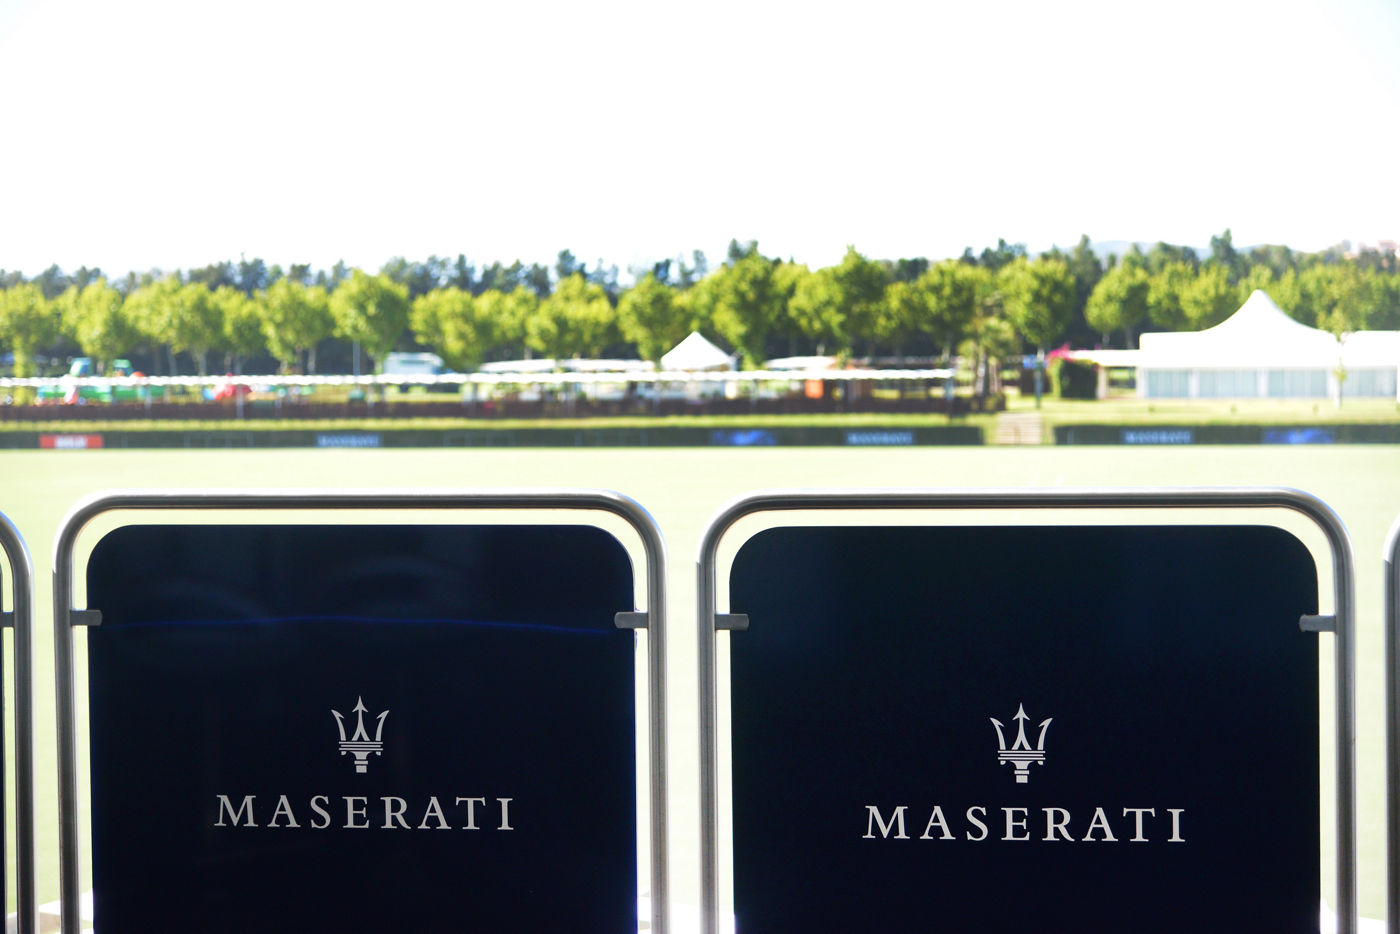 Maserati VIP Terrace @ Santa Maria Polo Club Sotogrande